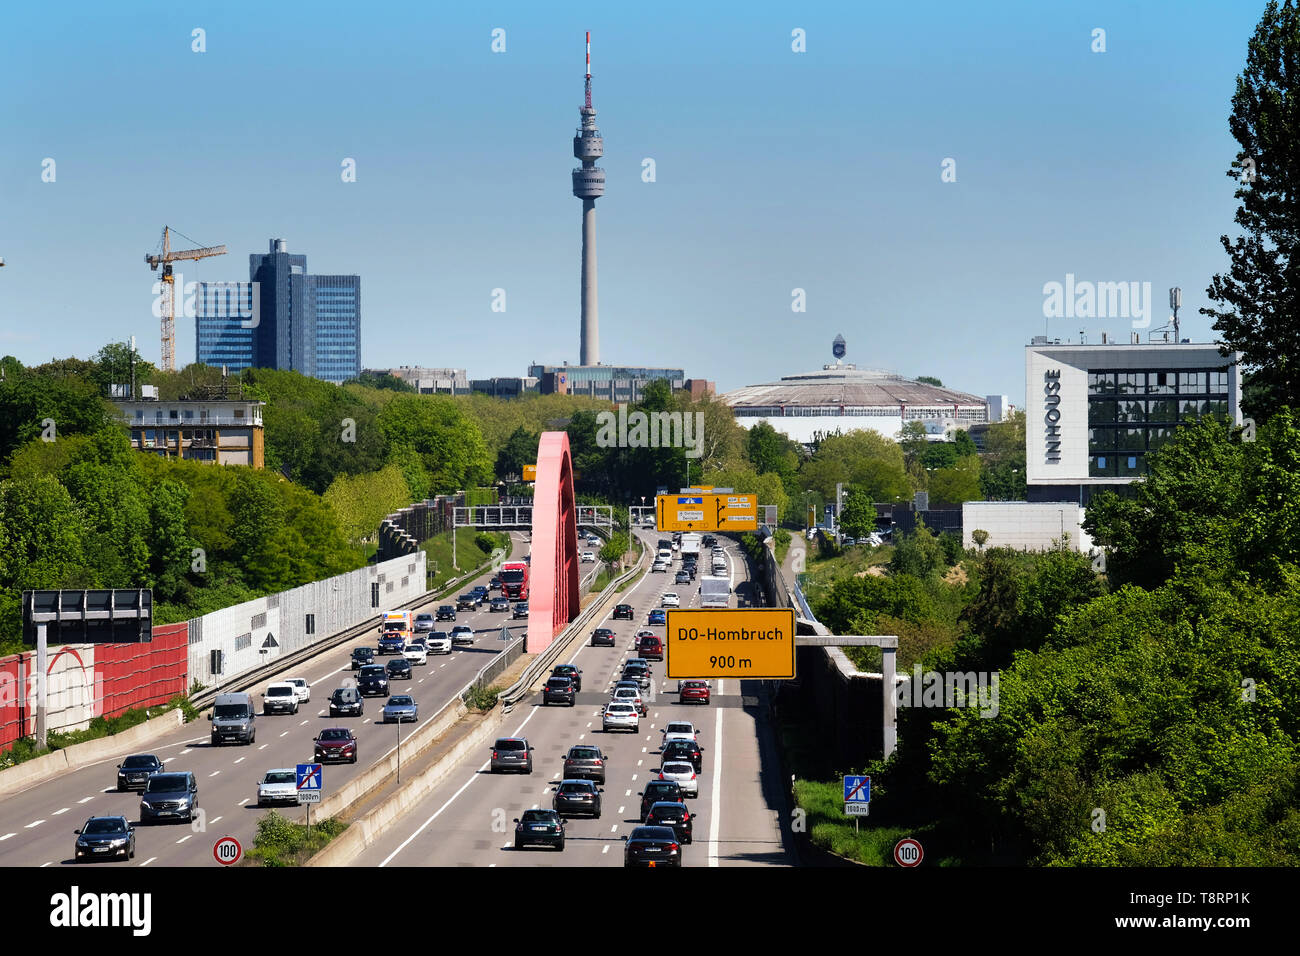 Horizonte de Dortmund, con la autopista A40 (Ruhrschnellweg cruces) en Dortmund como la carretera federal nº 1 con el fútbol arena Westfalenstadion (Signal Iduna Park), y la torre de televisión Florianturm Westfalenhalle en Westfalenpark. Foto de stock